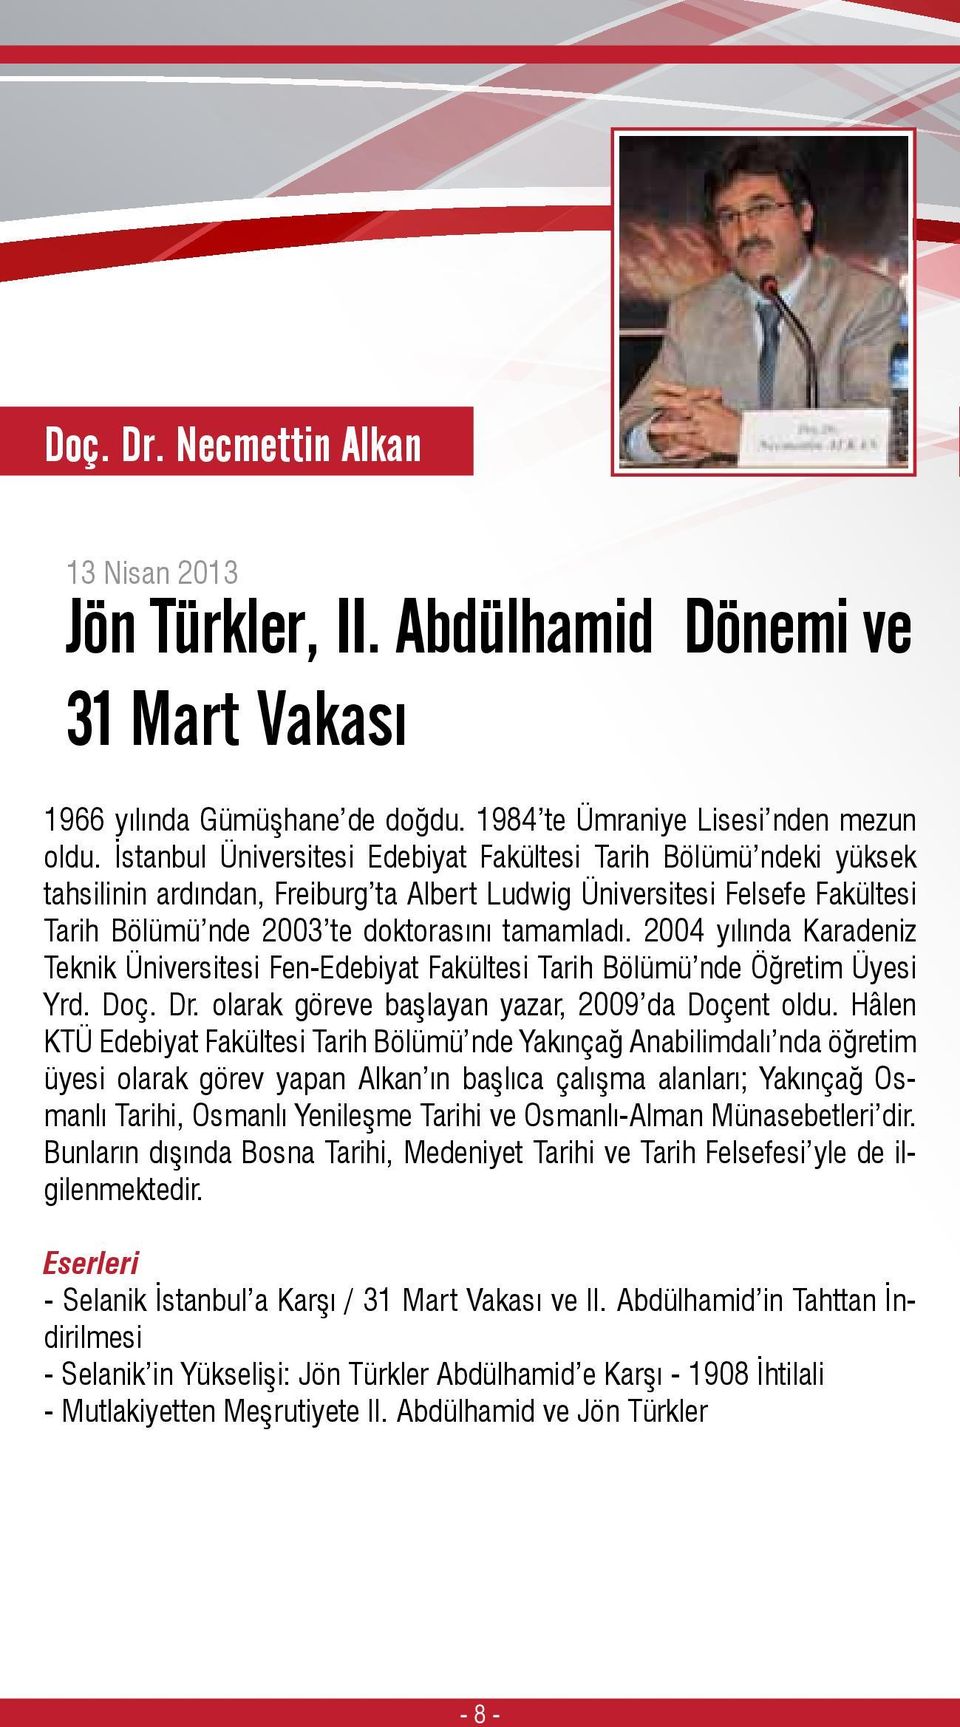 2004 yılında Karadeniz Teknik Üniversitesi Fen-Edebiyat Fakültesi Tarih Bölümü nde Öğretim Üyesi Yrd. Doç. Dr. olarak göreve başlayan yazar, 2009 da Doçent oldu.